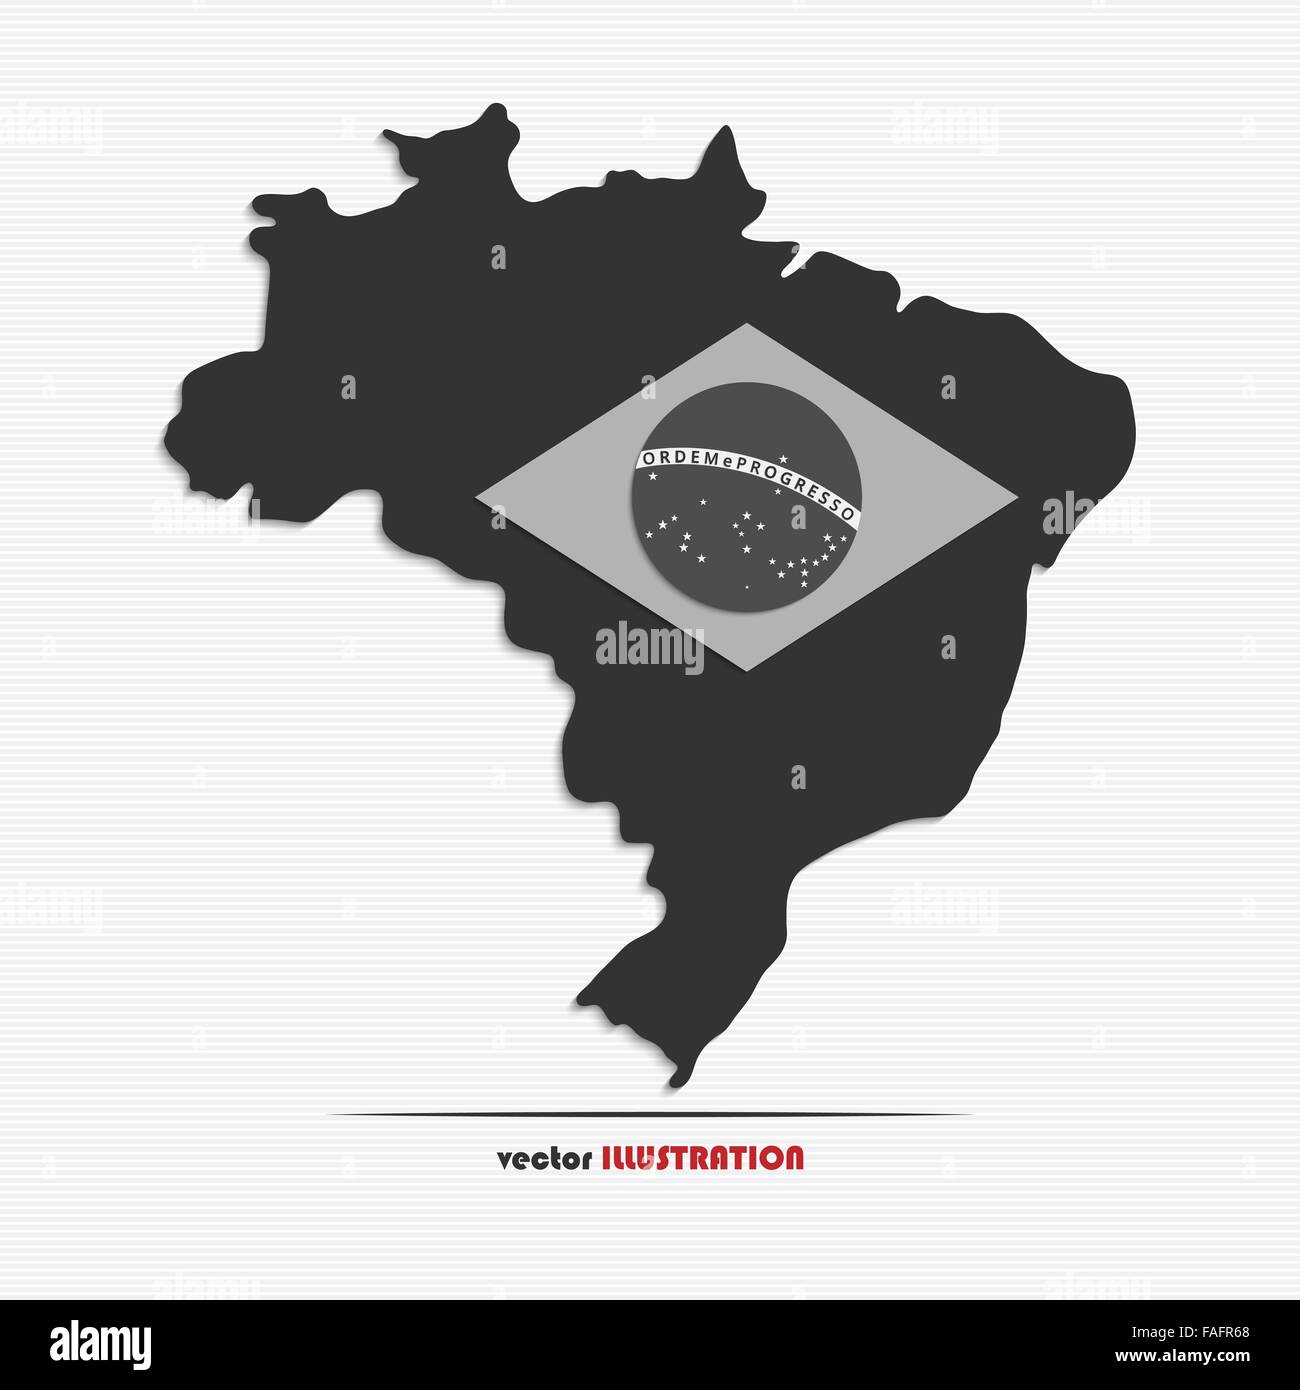 Vektor-Illustration von Brasilien-Karte für Ihr design Stock Vektor